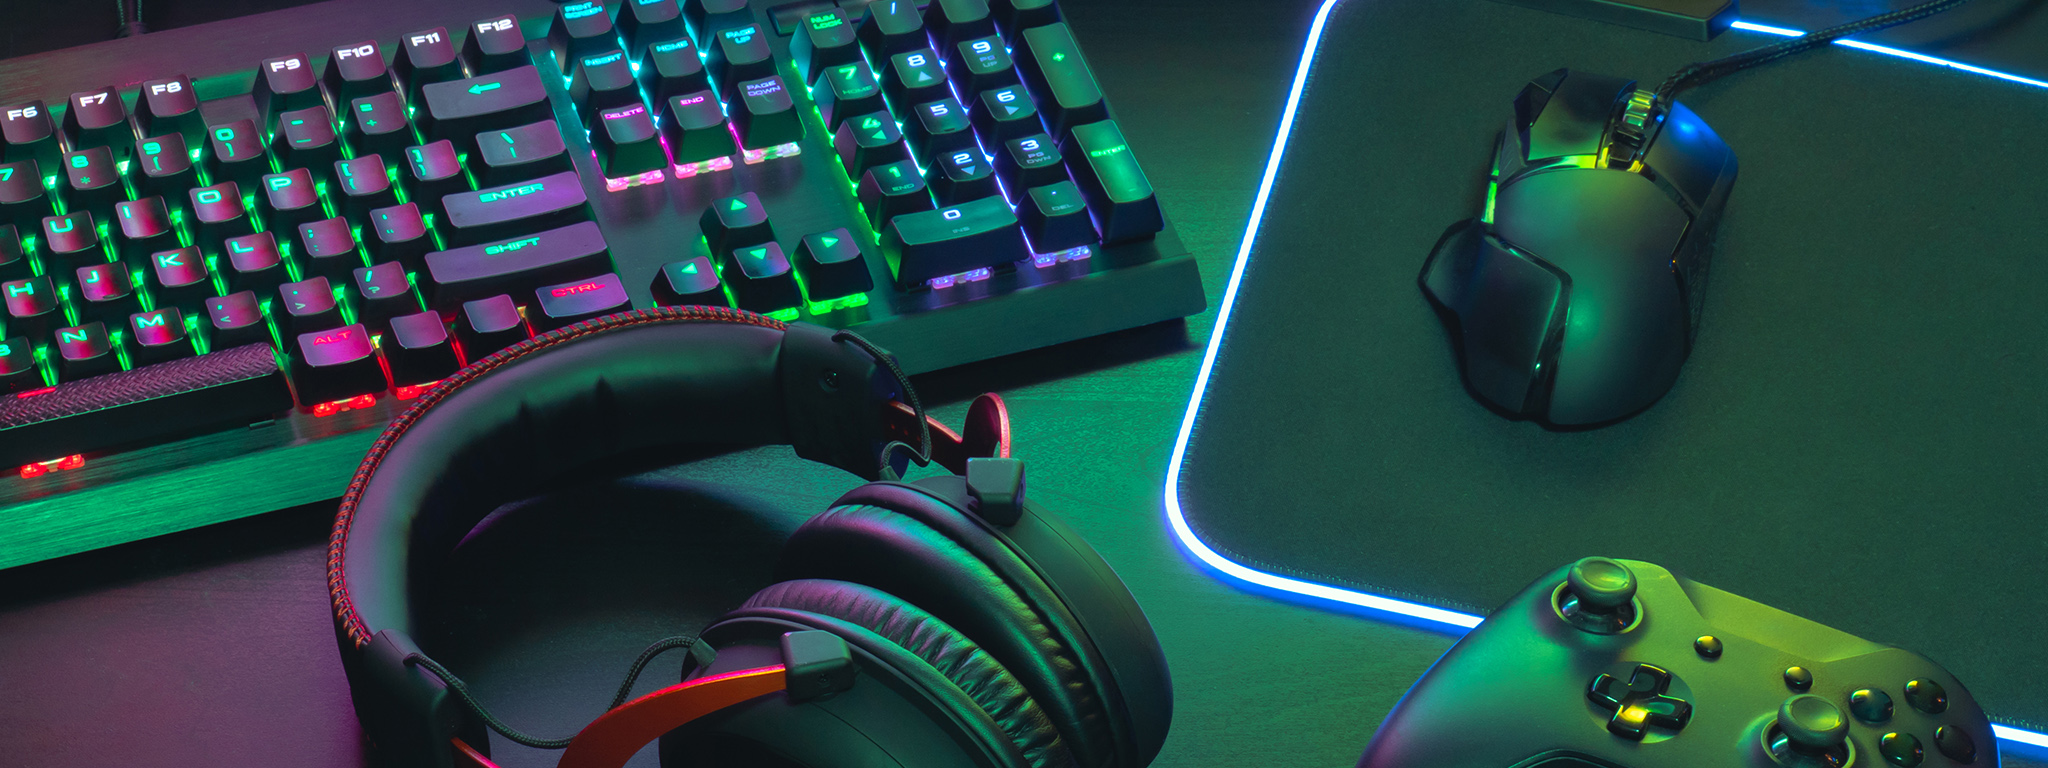 Рабочее место геймера, клавиатура с RGB-подсветкой, гарнитура геймера, игровая мышь и коврик для мыши с RGB-подсветкой, контроллер Xbox